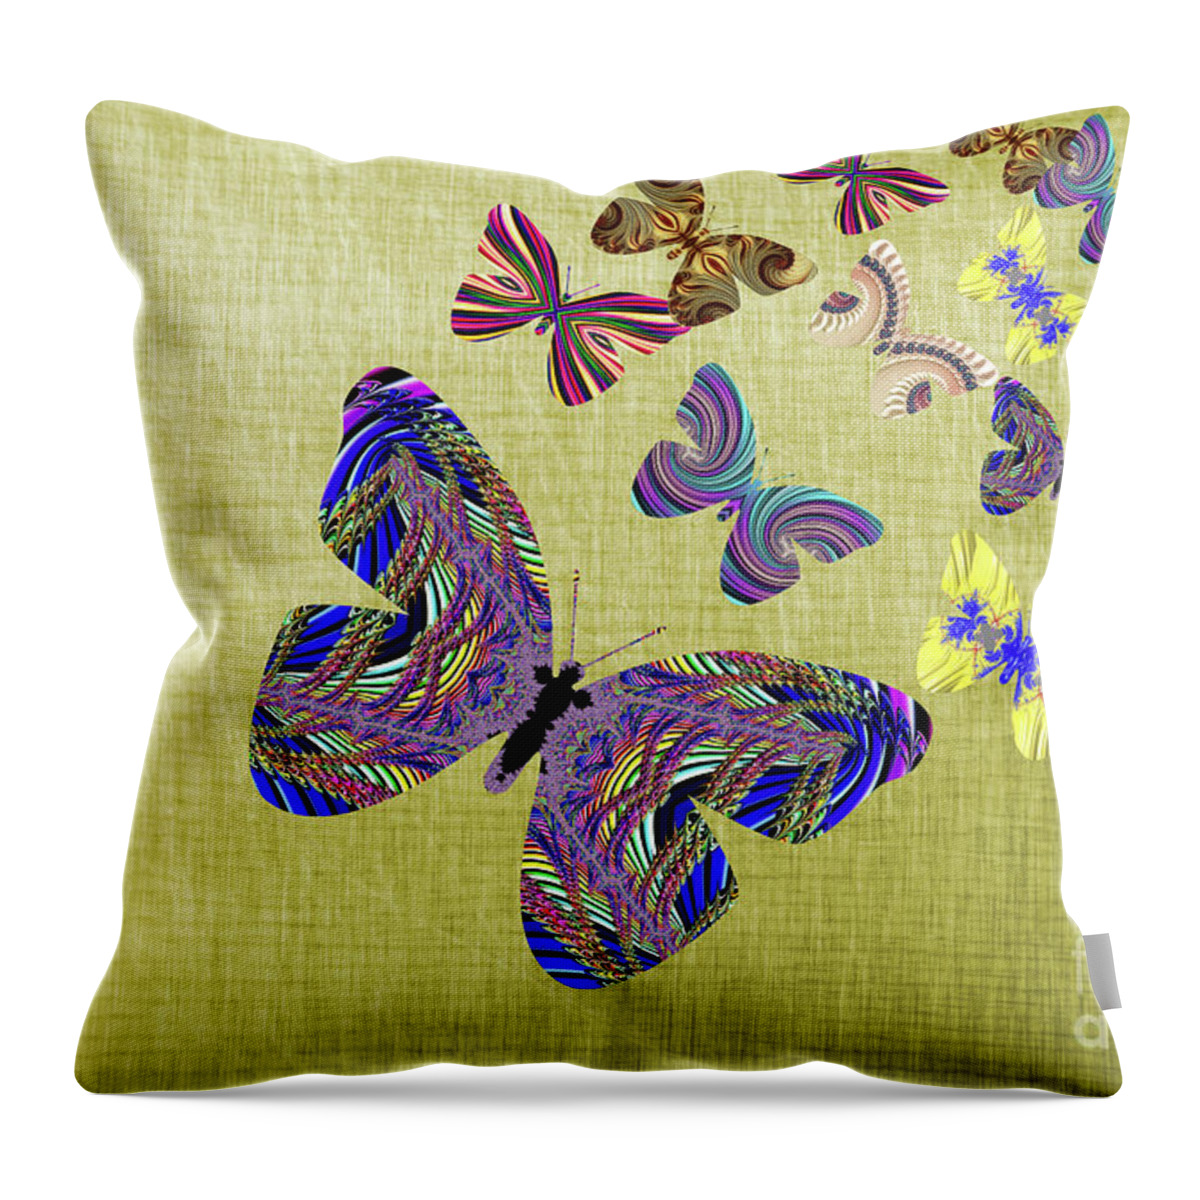 Butterflies Throw Pillow featuring the digital art Flight Of The Butterflies by Steve Purnell